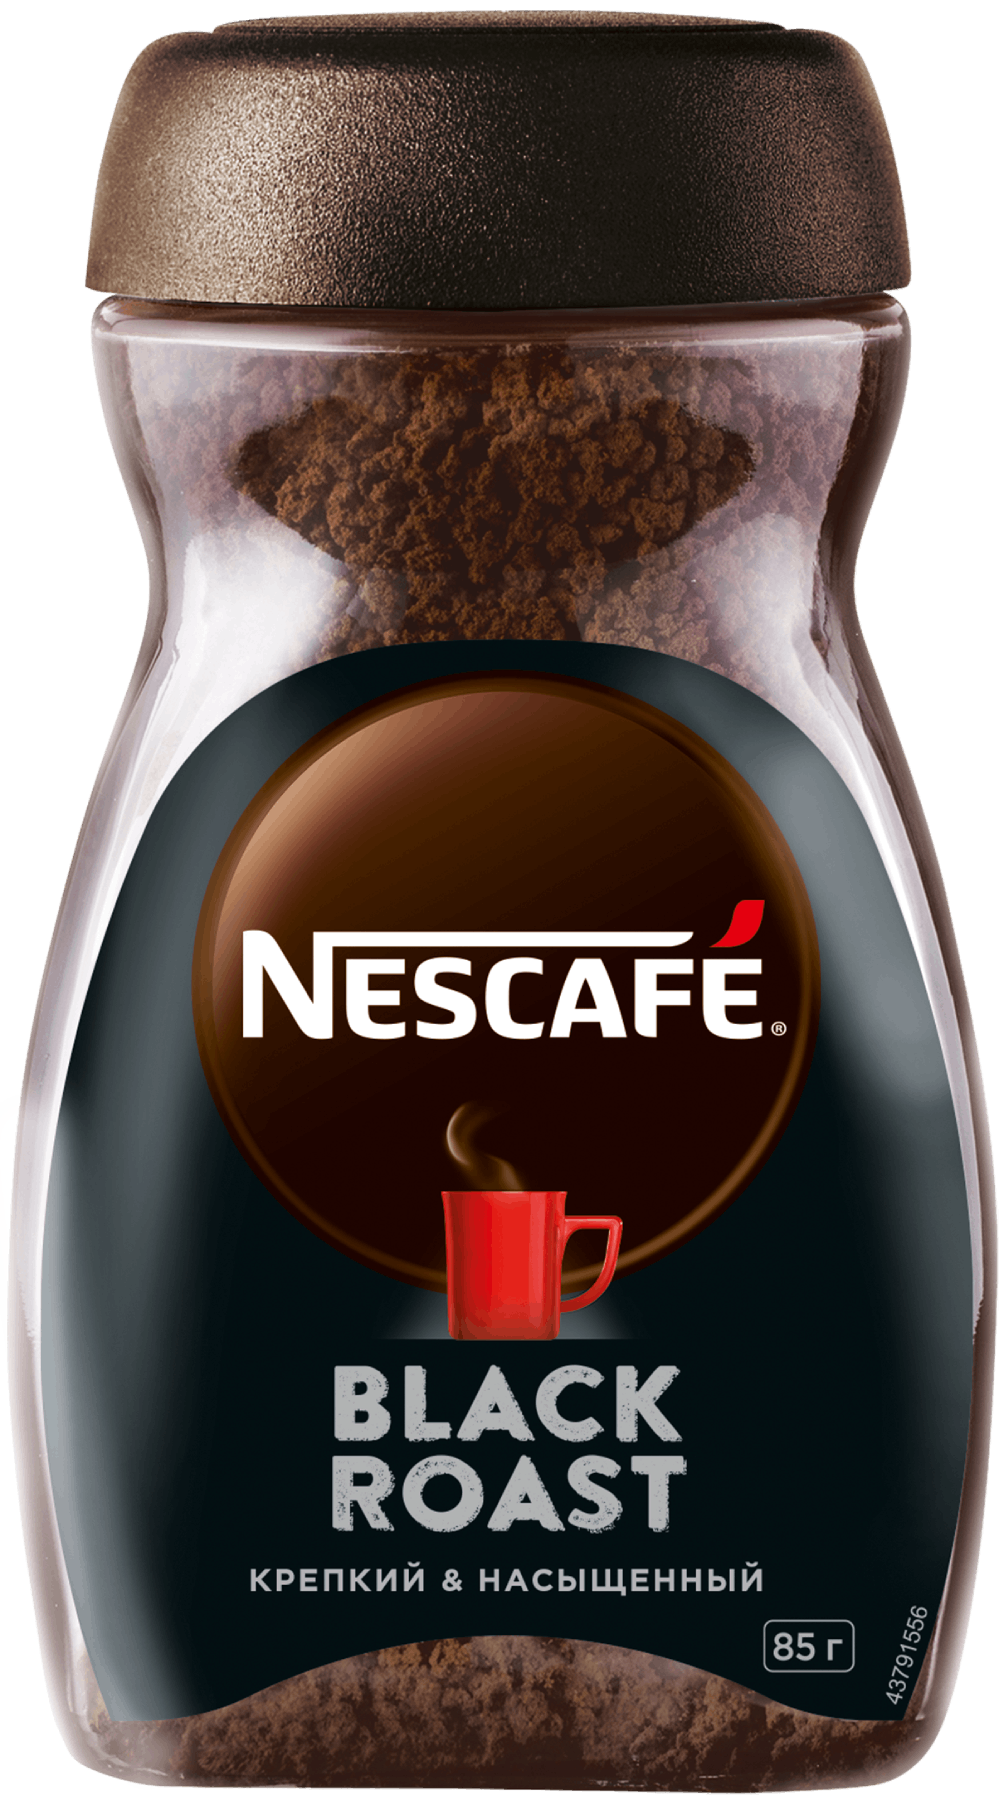 Nescafe Black Roast